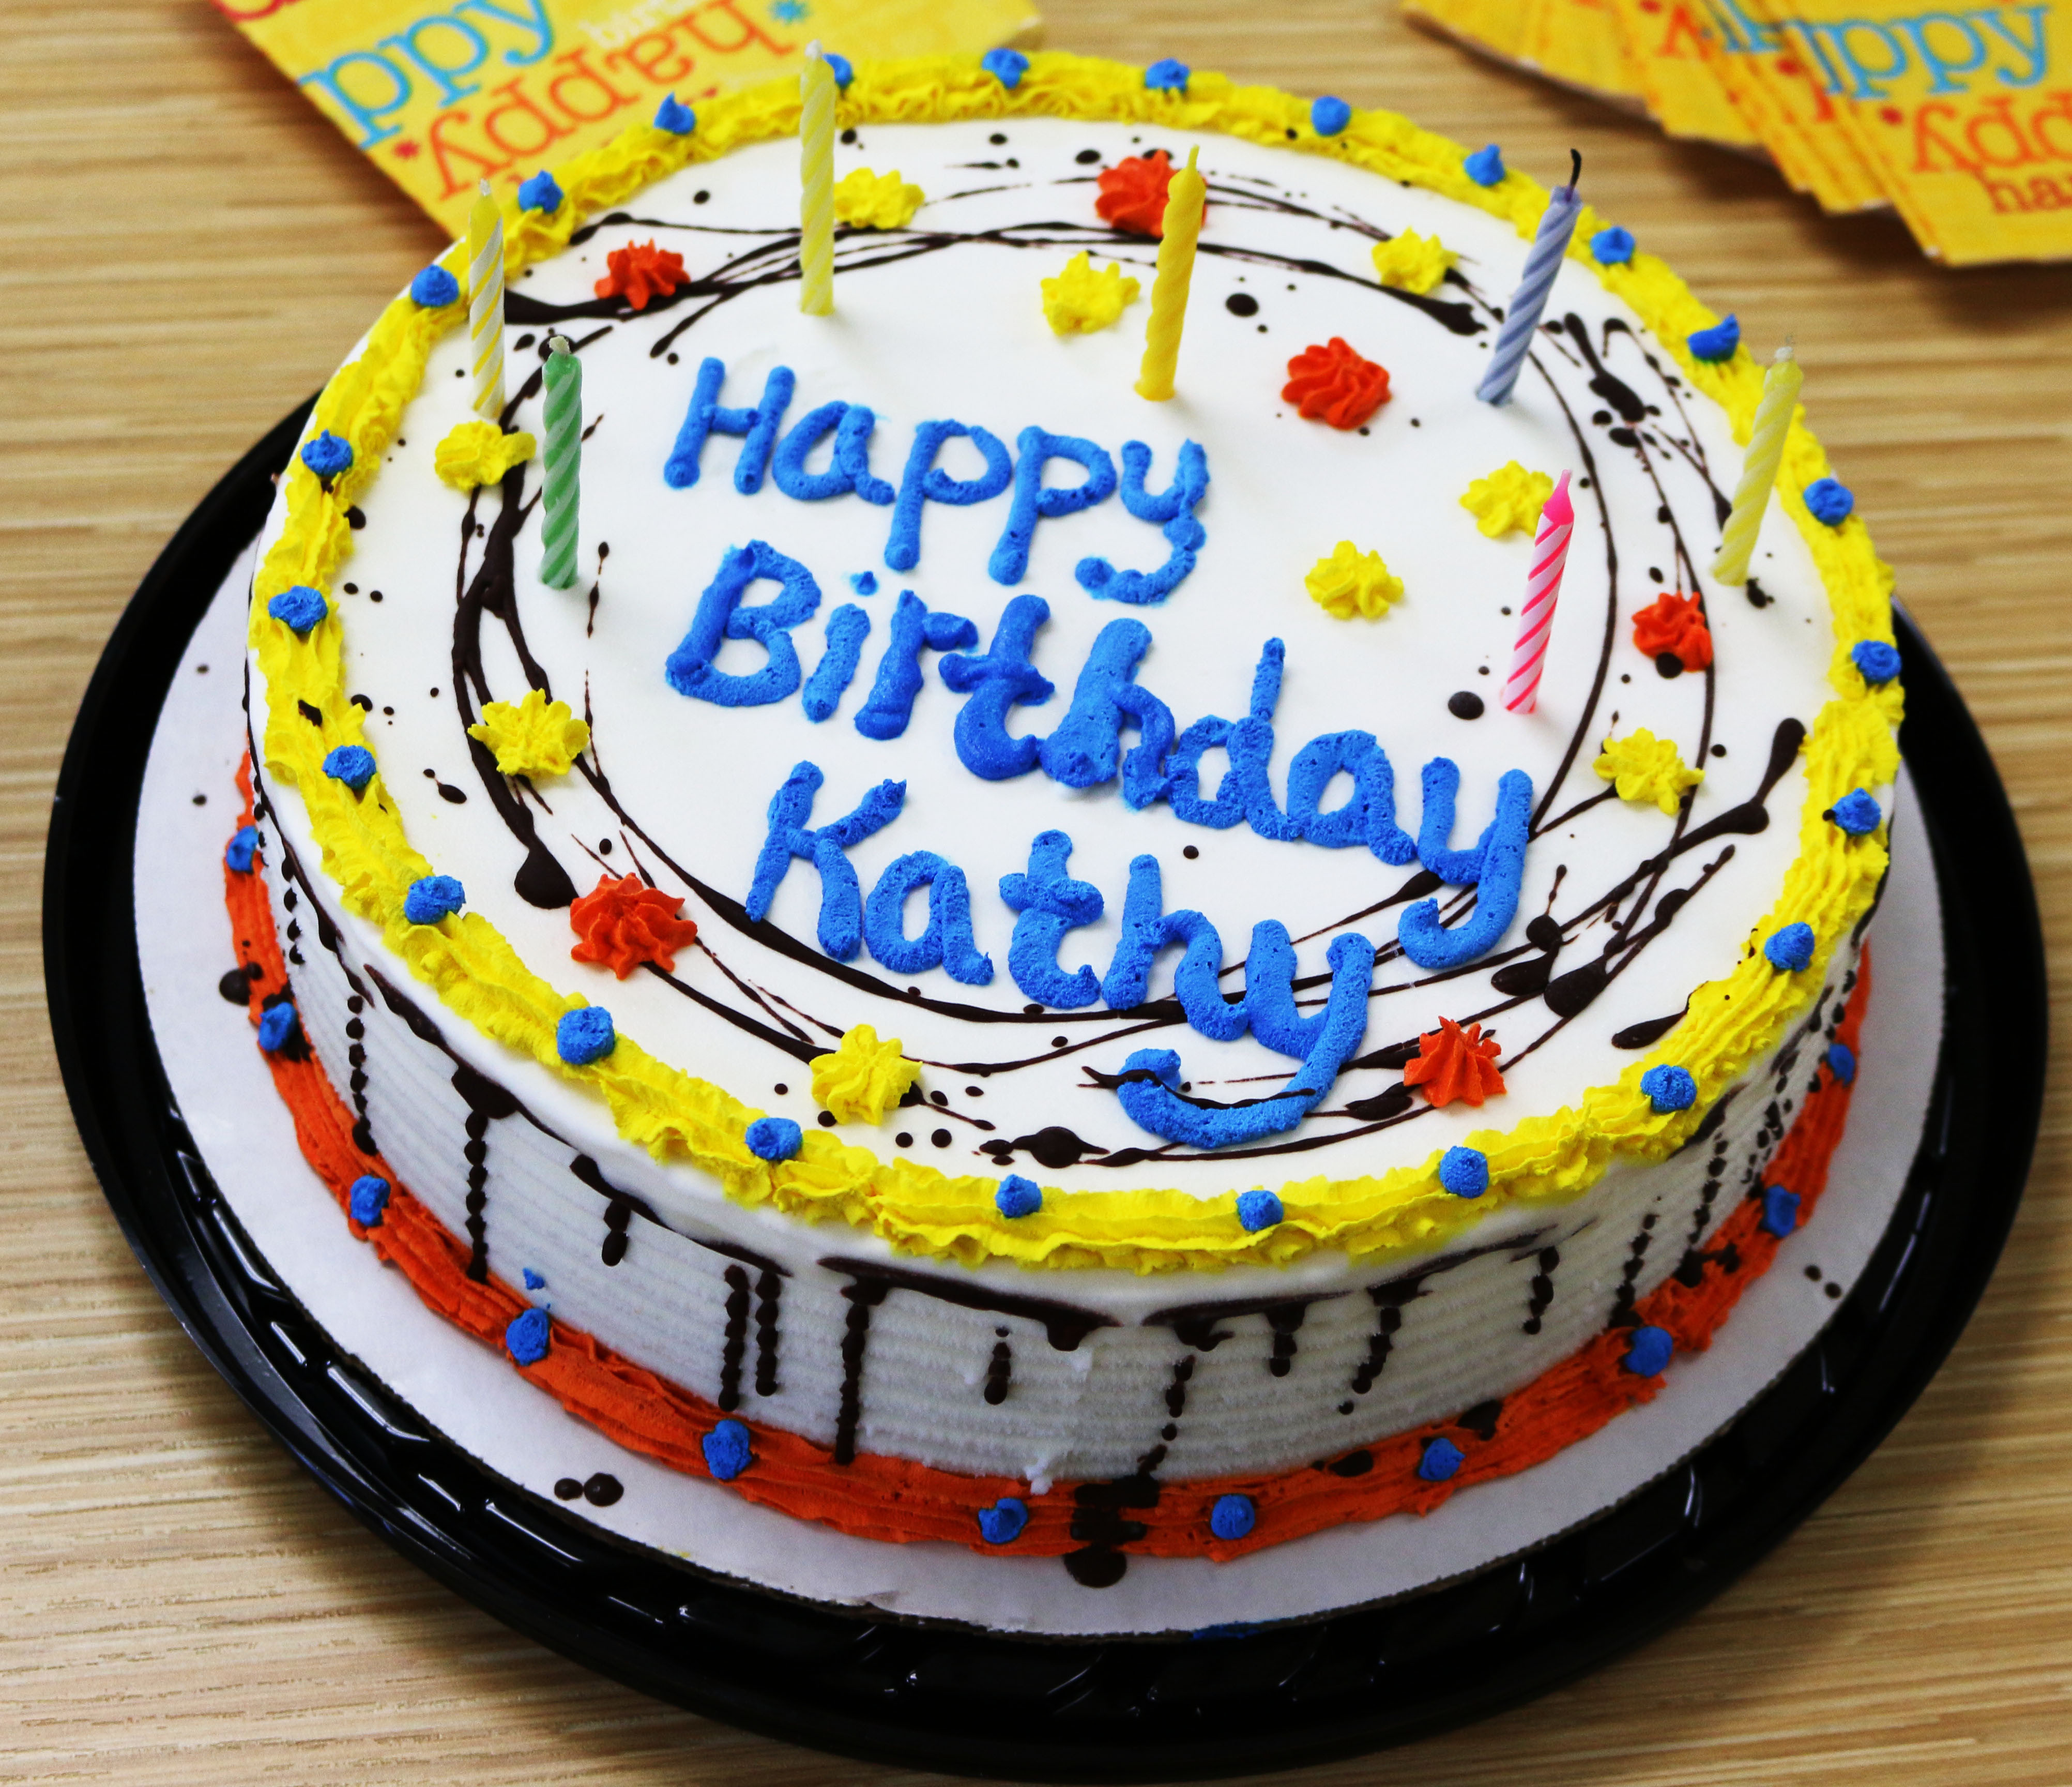 3. Happy Birthday Kathy.